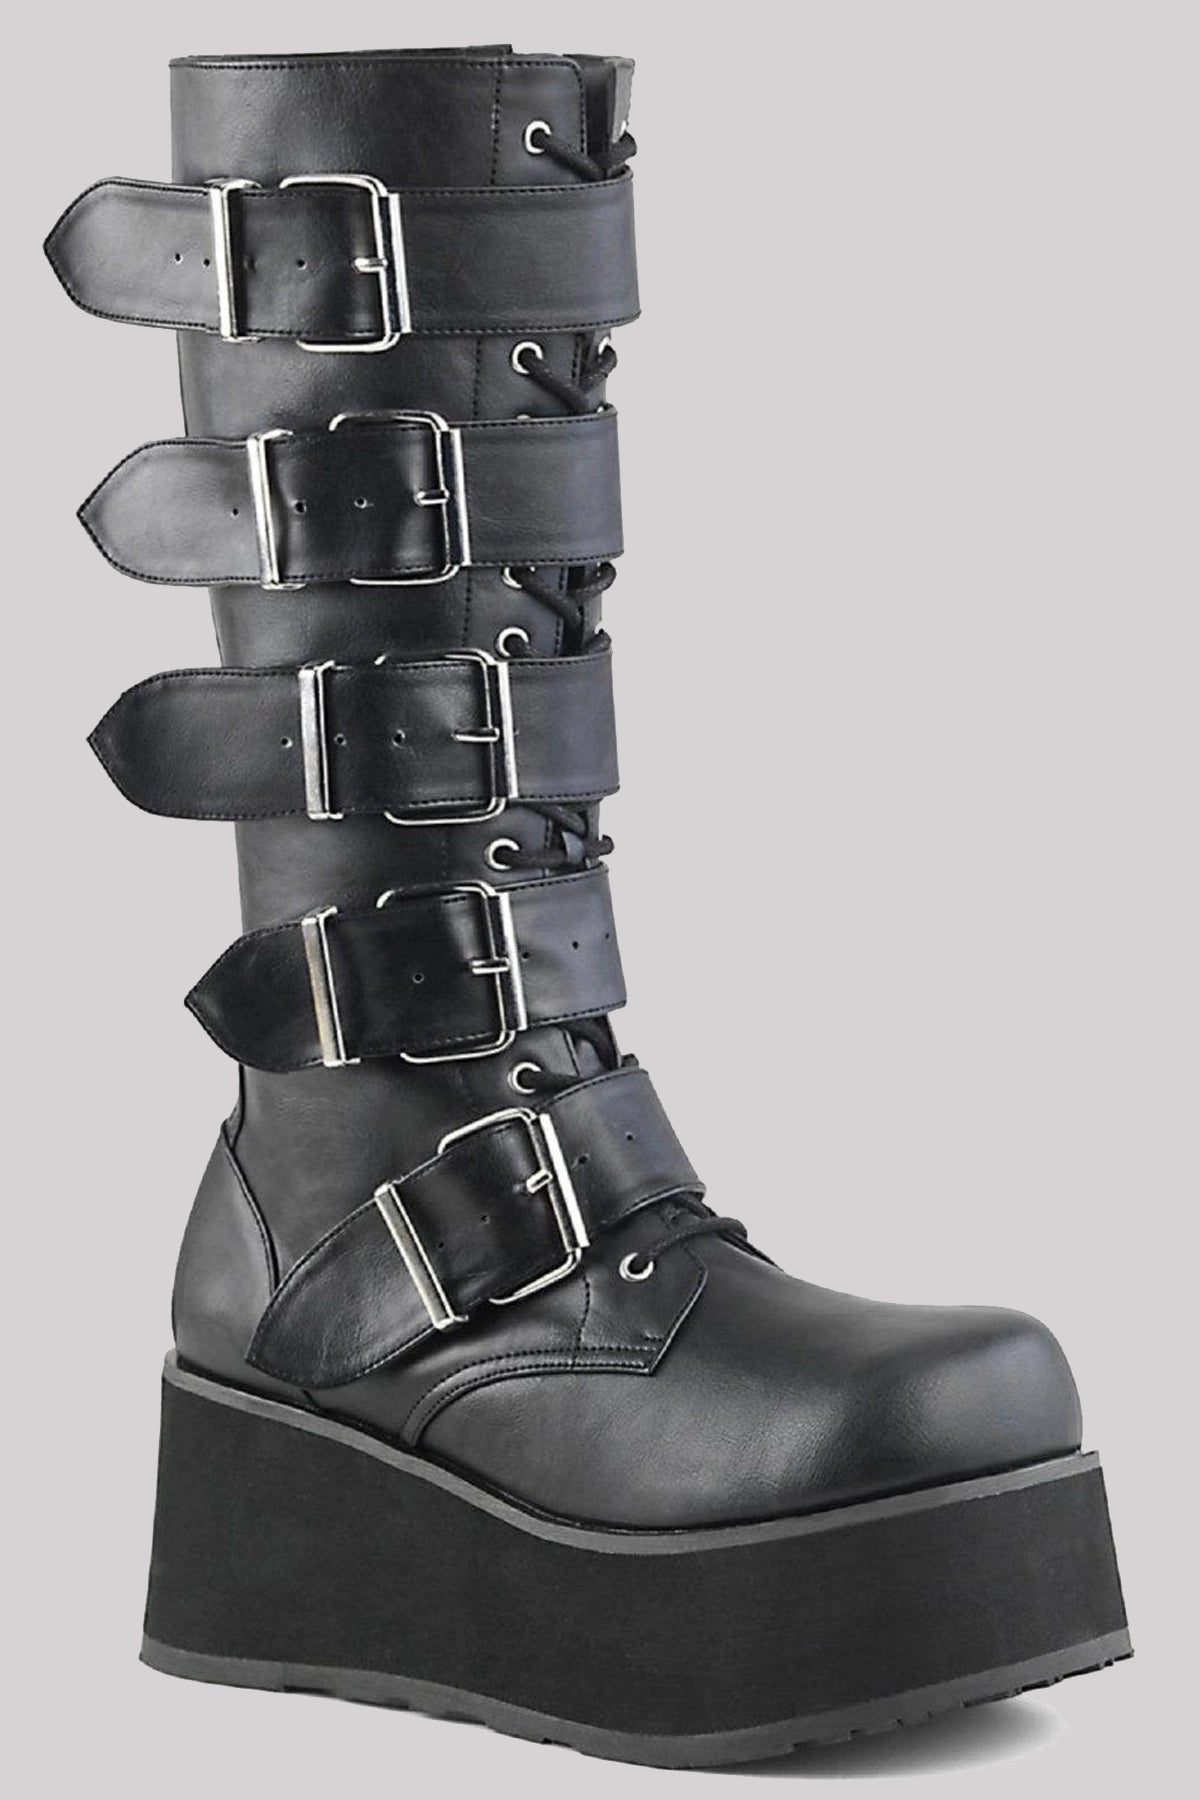 Demonia Trashville 518 Platform Gothic Punk Knee High Boots